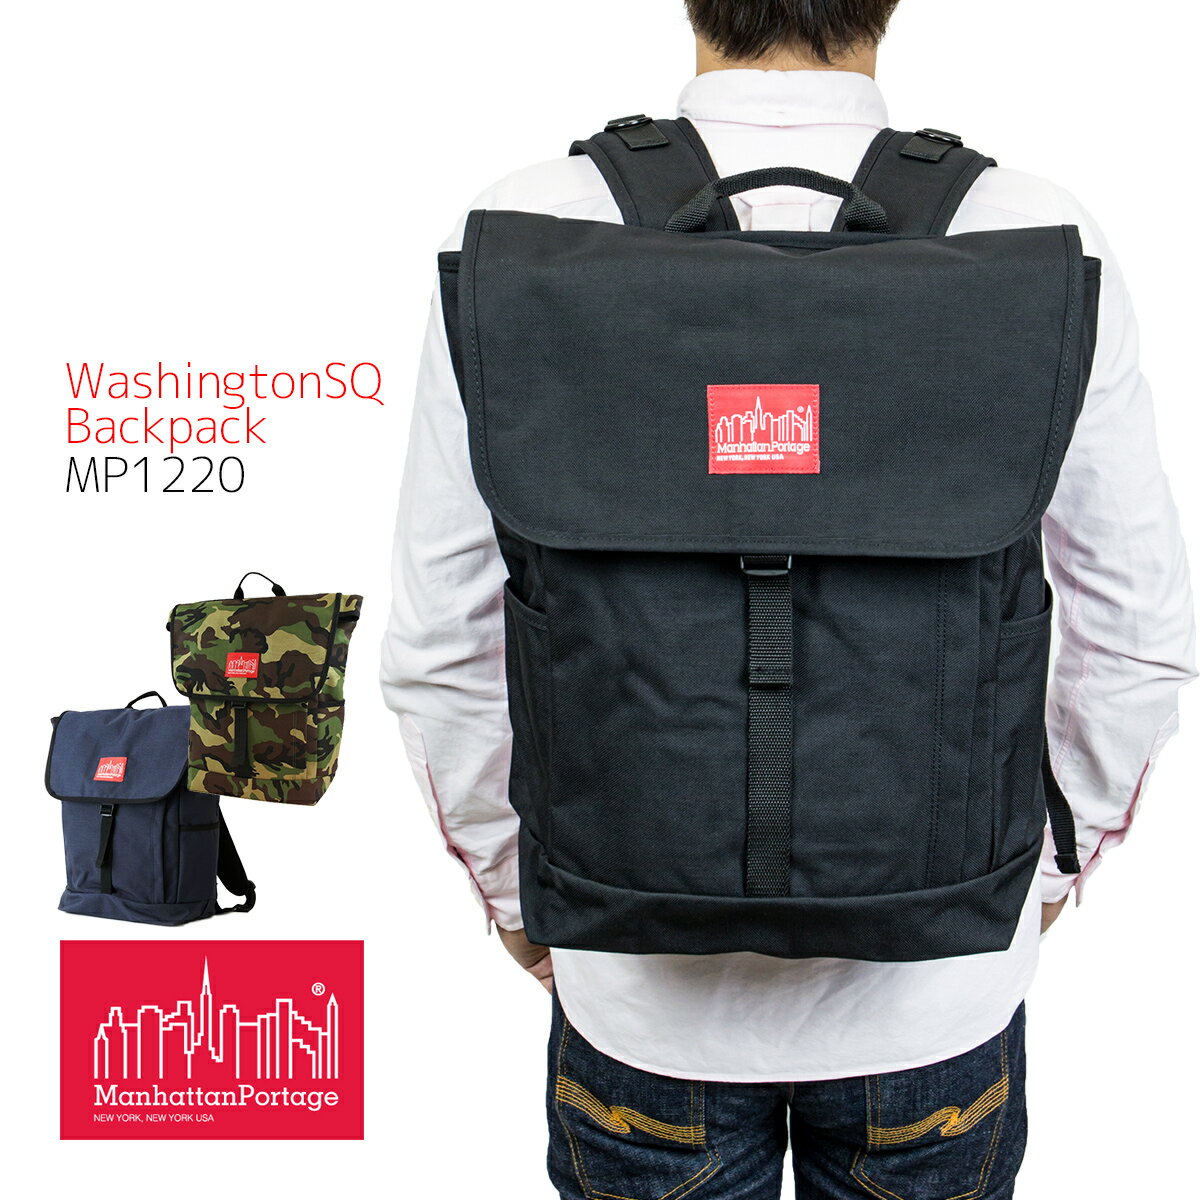 マンハッタンポーテージ リュック Manhattan Portage Washington SQ Backpack リュックサック 通学 大容量 軽量 A3 A4 B4 メンズ レディース MP1220 